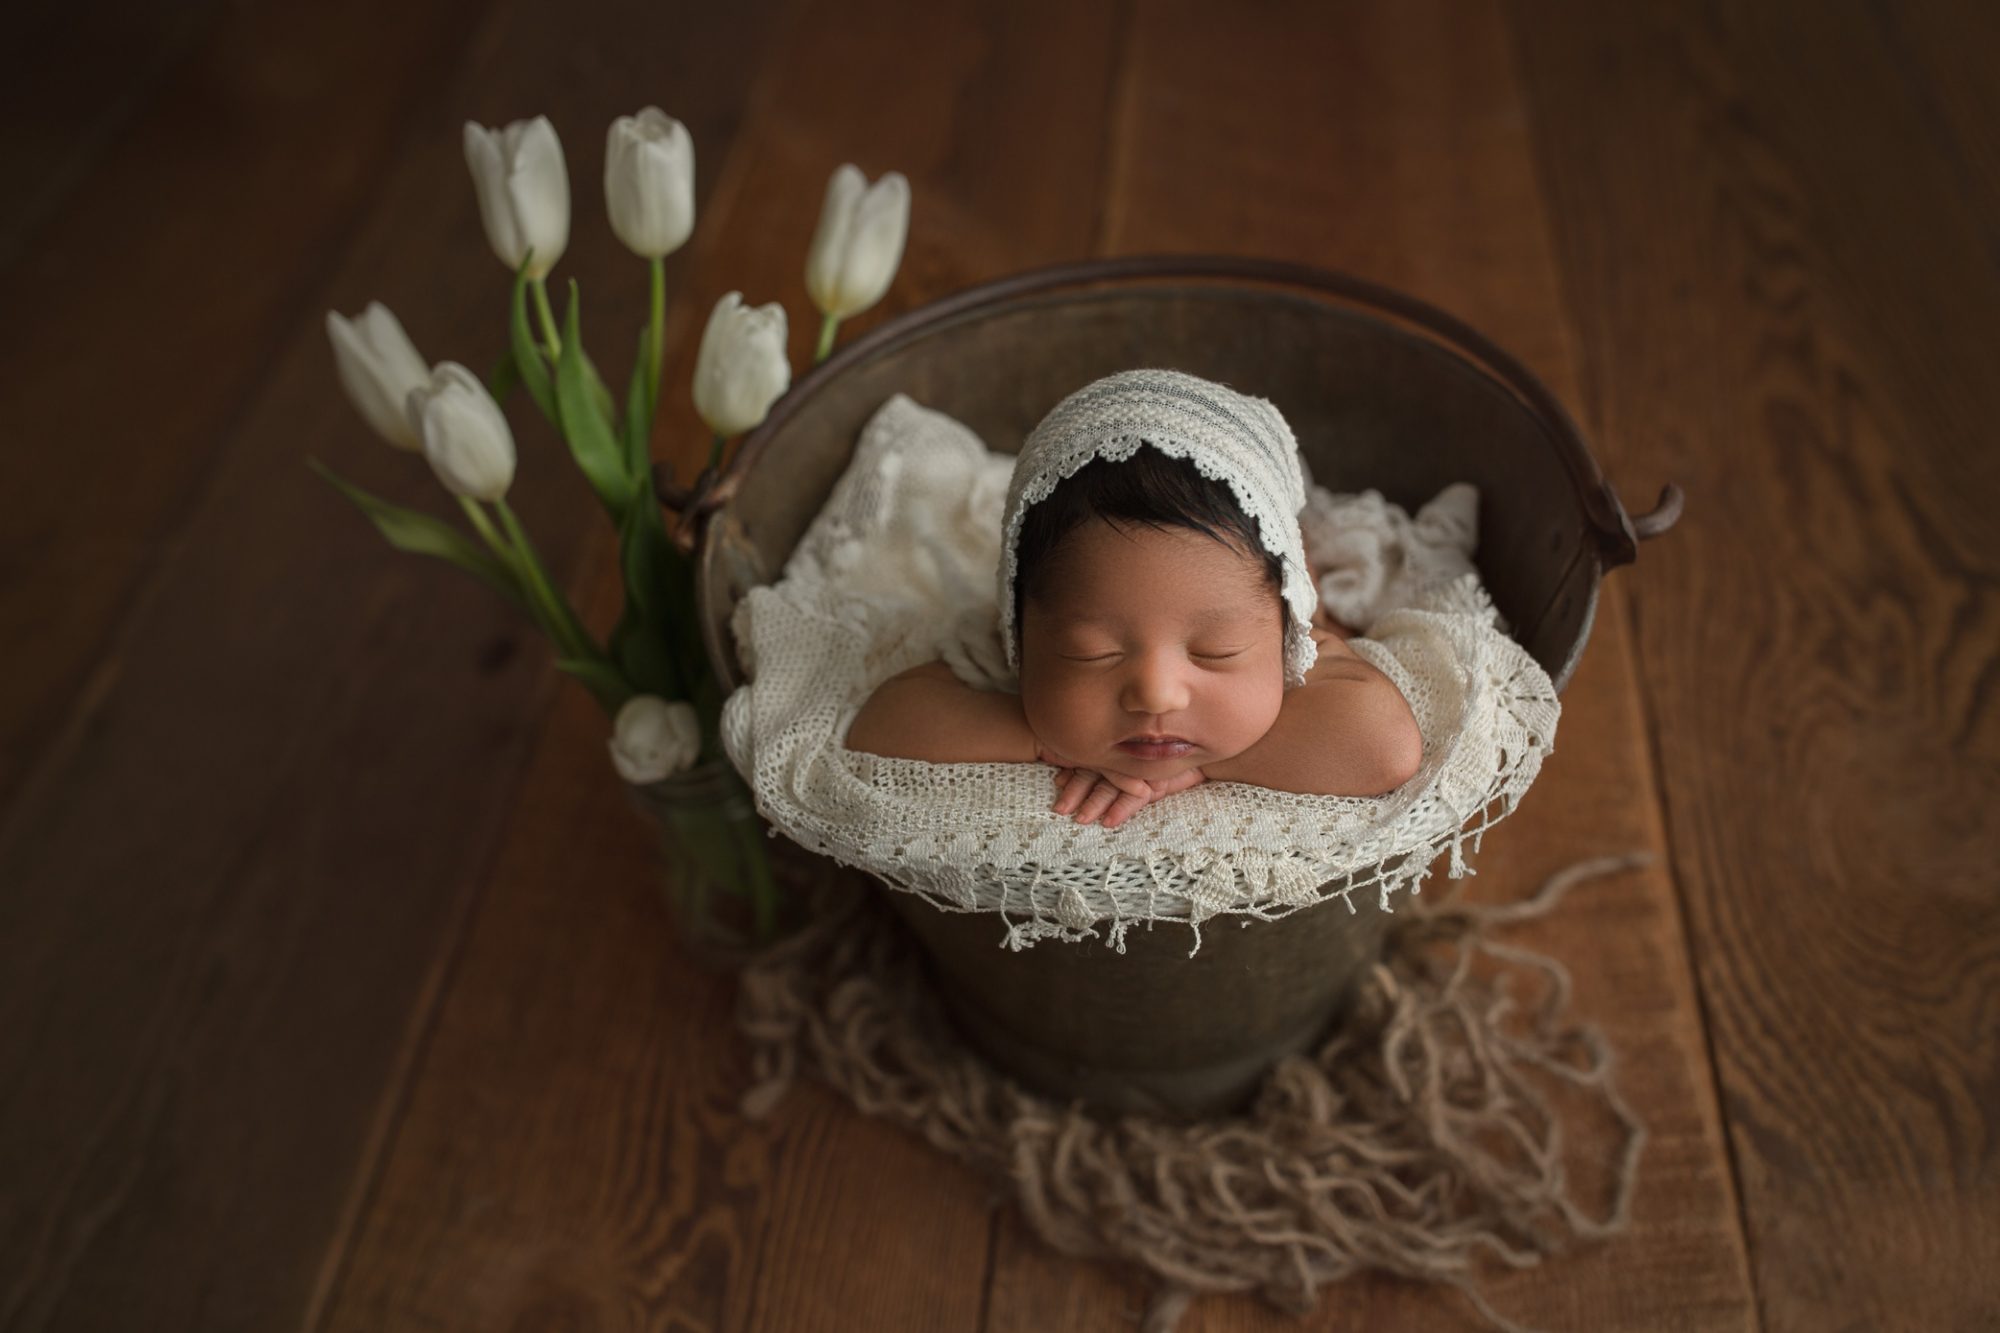 Olympia Newborn Baby Photographer | newborn photography seattle | tacoma baby photographer